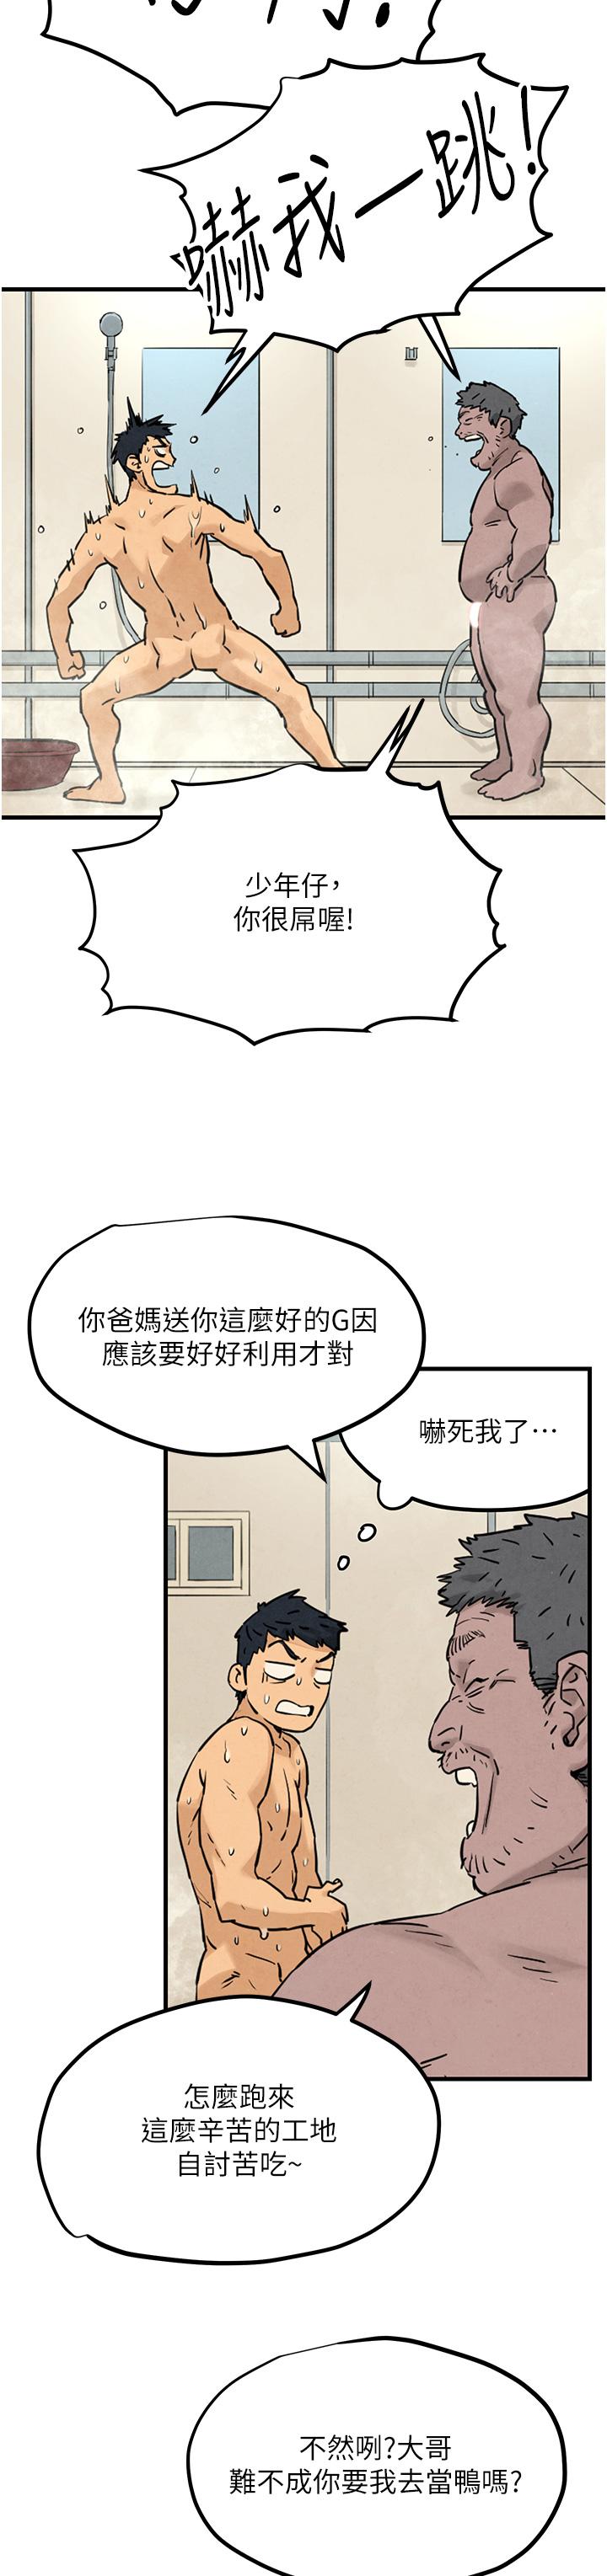 韩国污漫画 欲海交鋒 第1话 征服这城市的女人吧 72